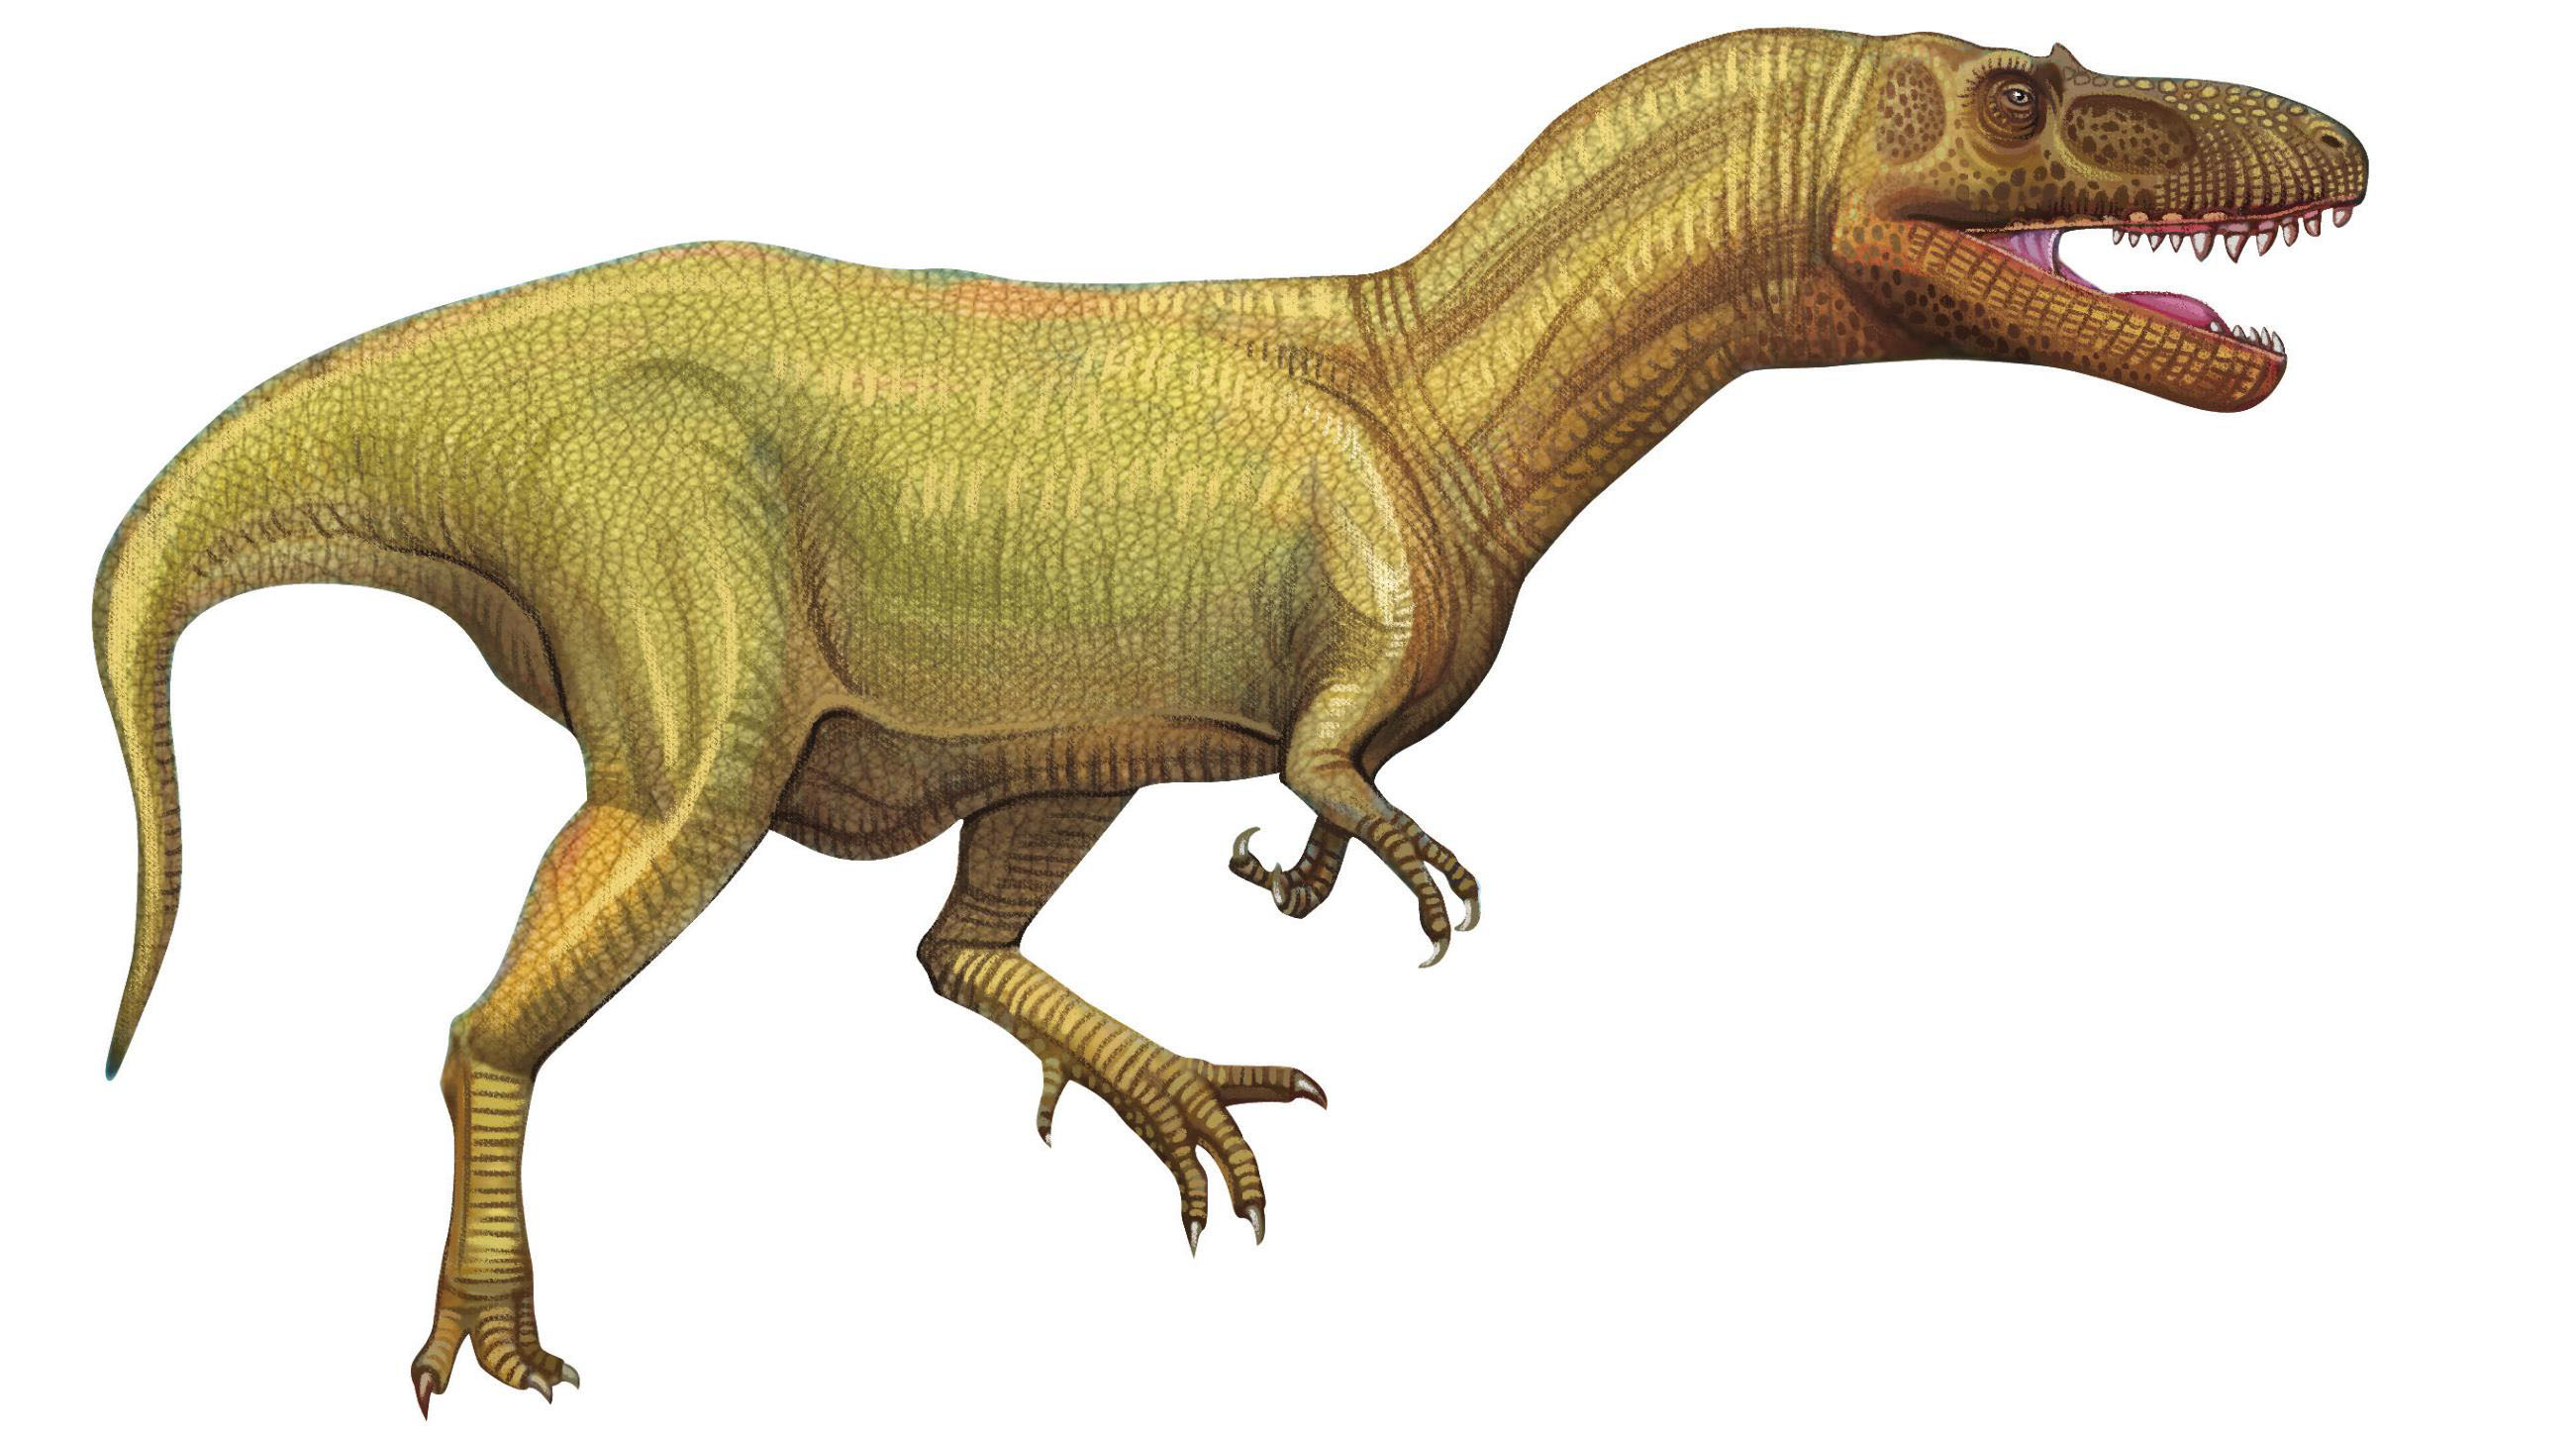 目前发现生存时间最早的恐龙有三种,分别是:丁字龙,埃雷拉龙和始盗龙